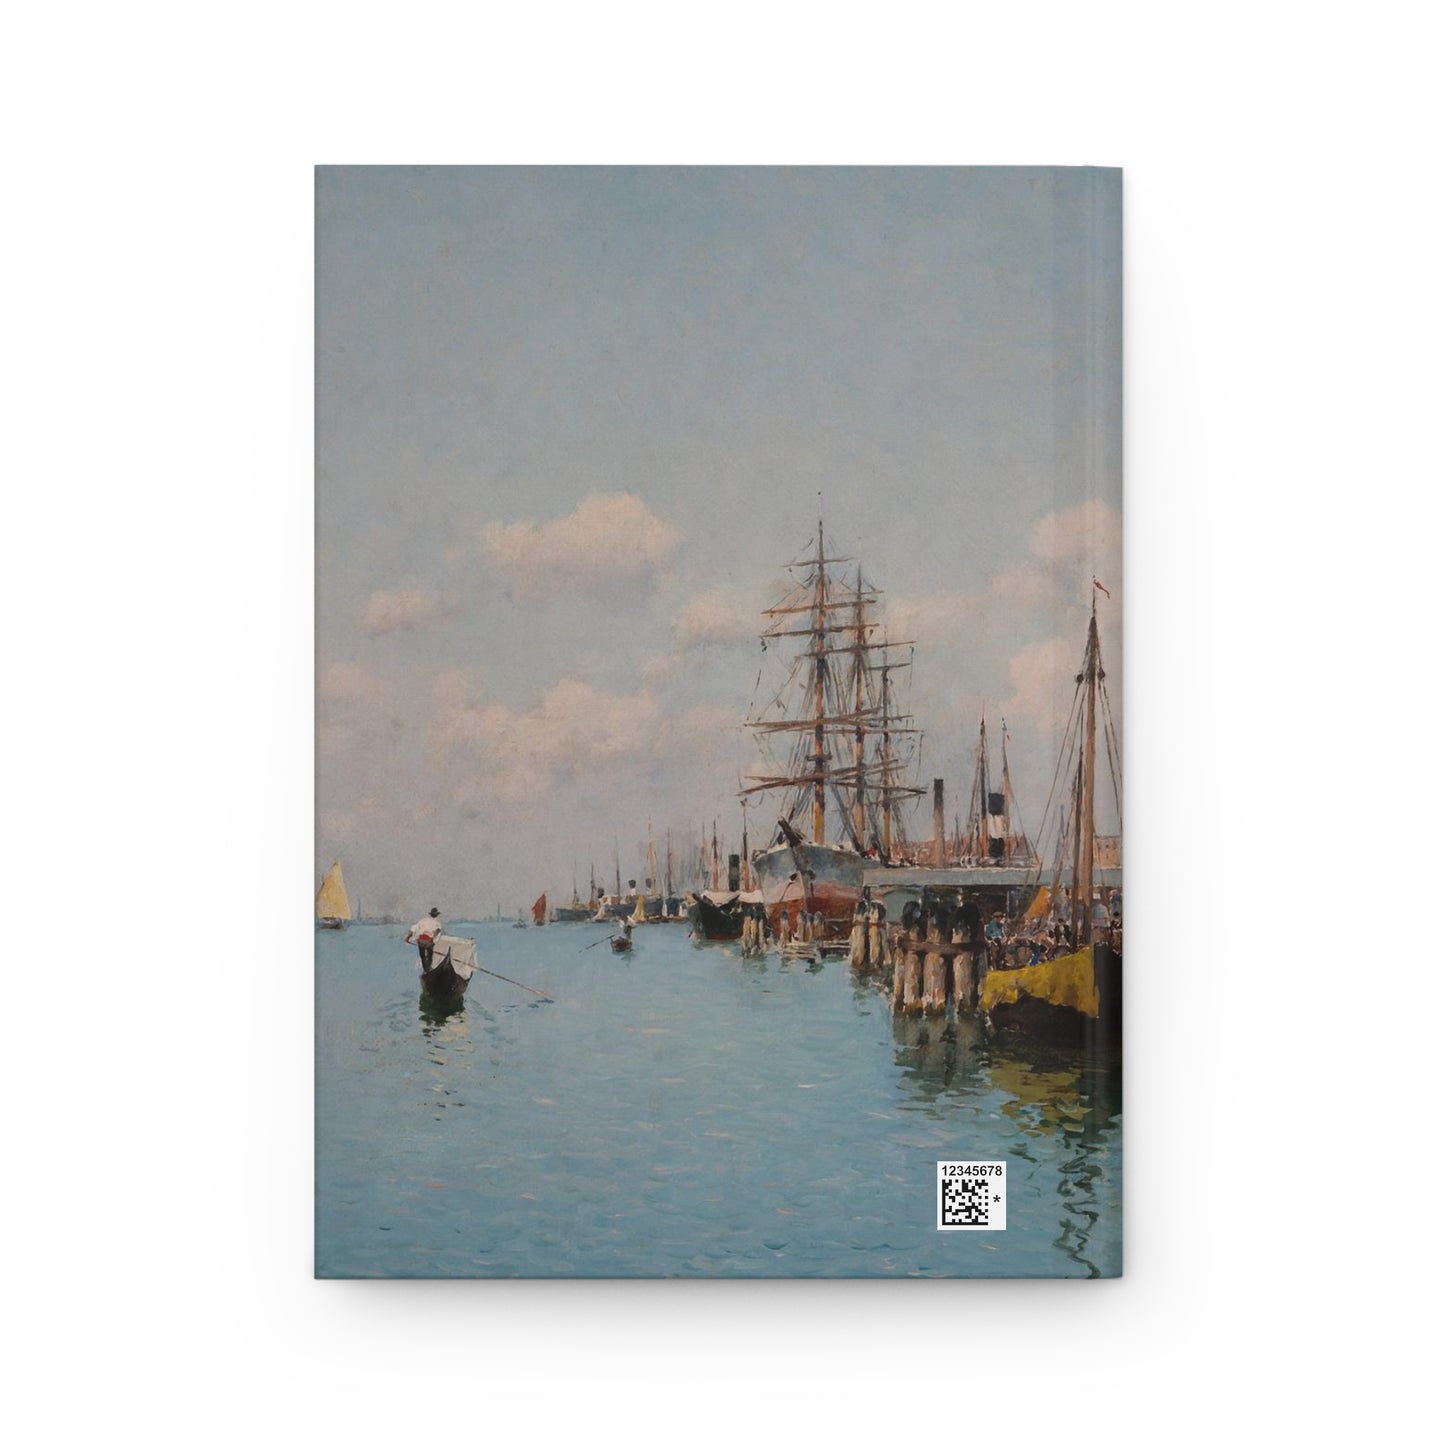 Federico del Campo: "The Giudecca Canal Santa Maria de Rosario" - Hardcover Journal